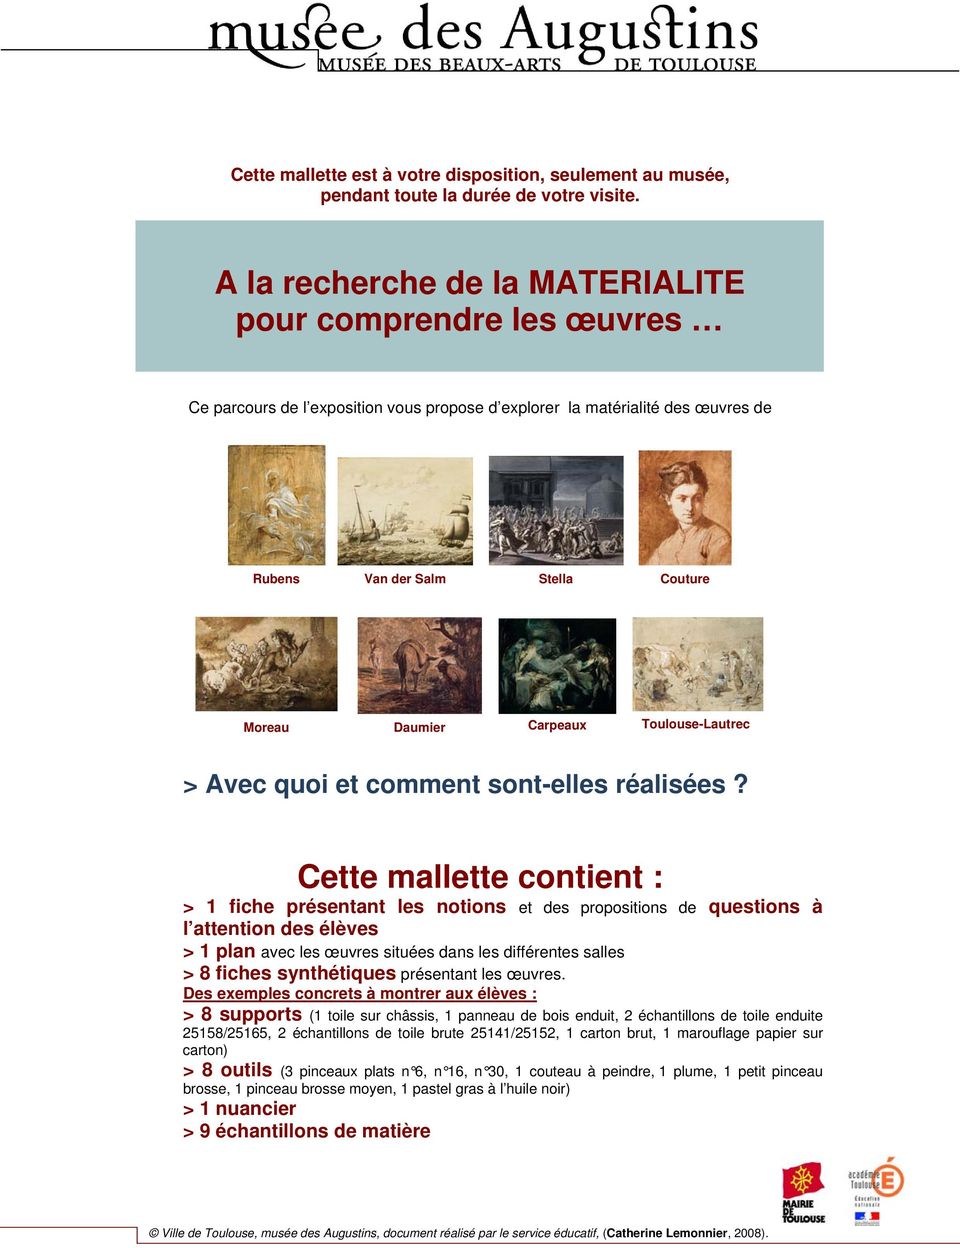 Toulouse-Lautrec > Avec quoi et comment sont-elles réalisées?